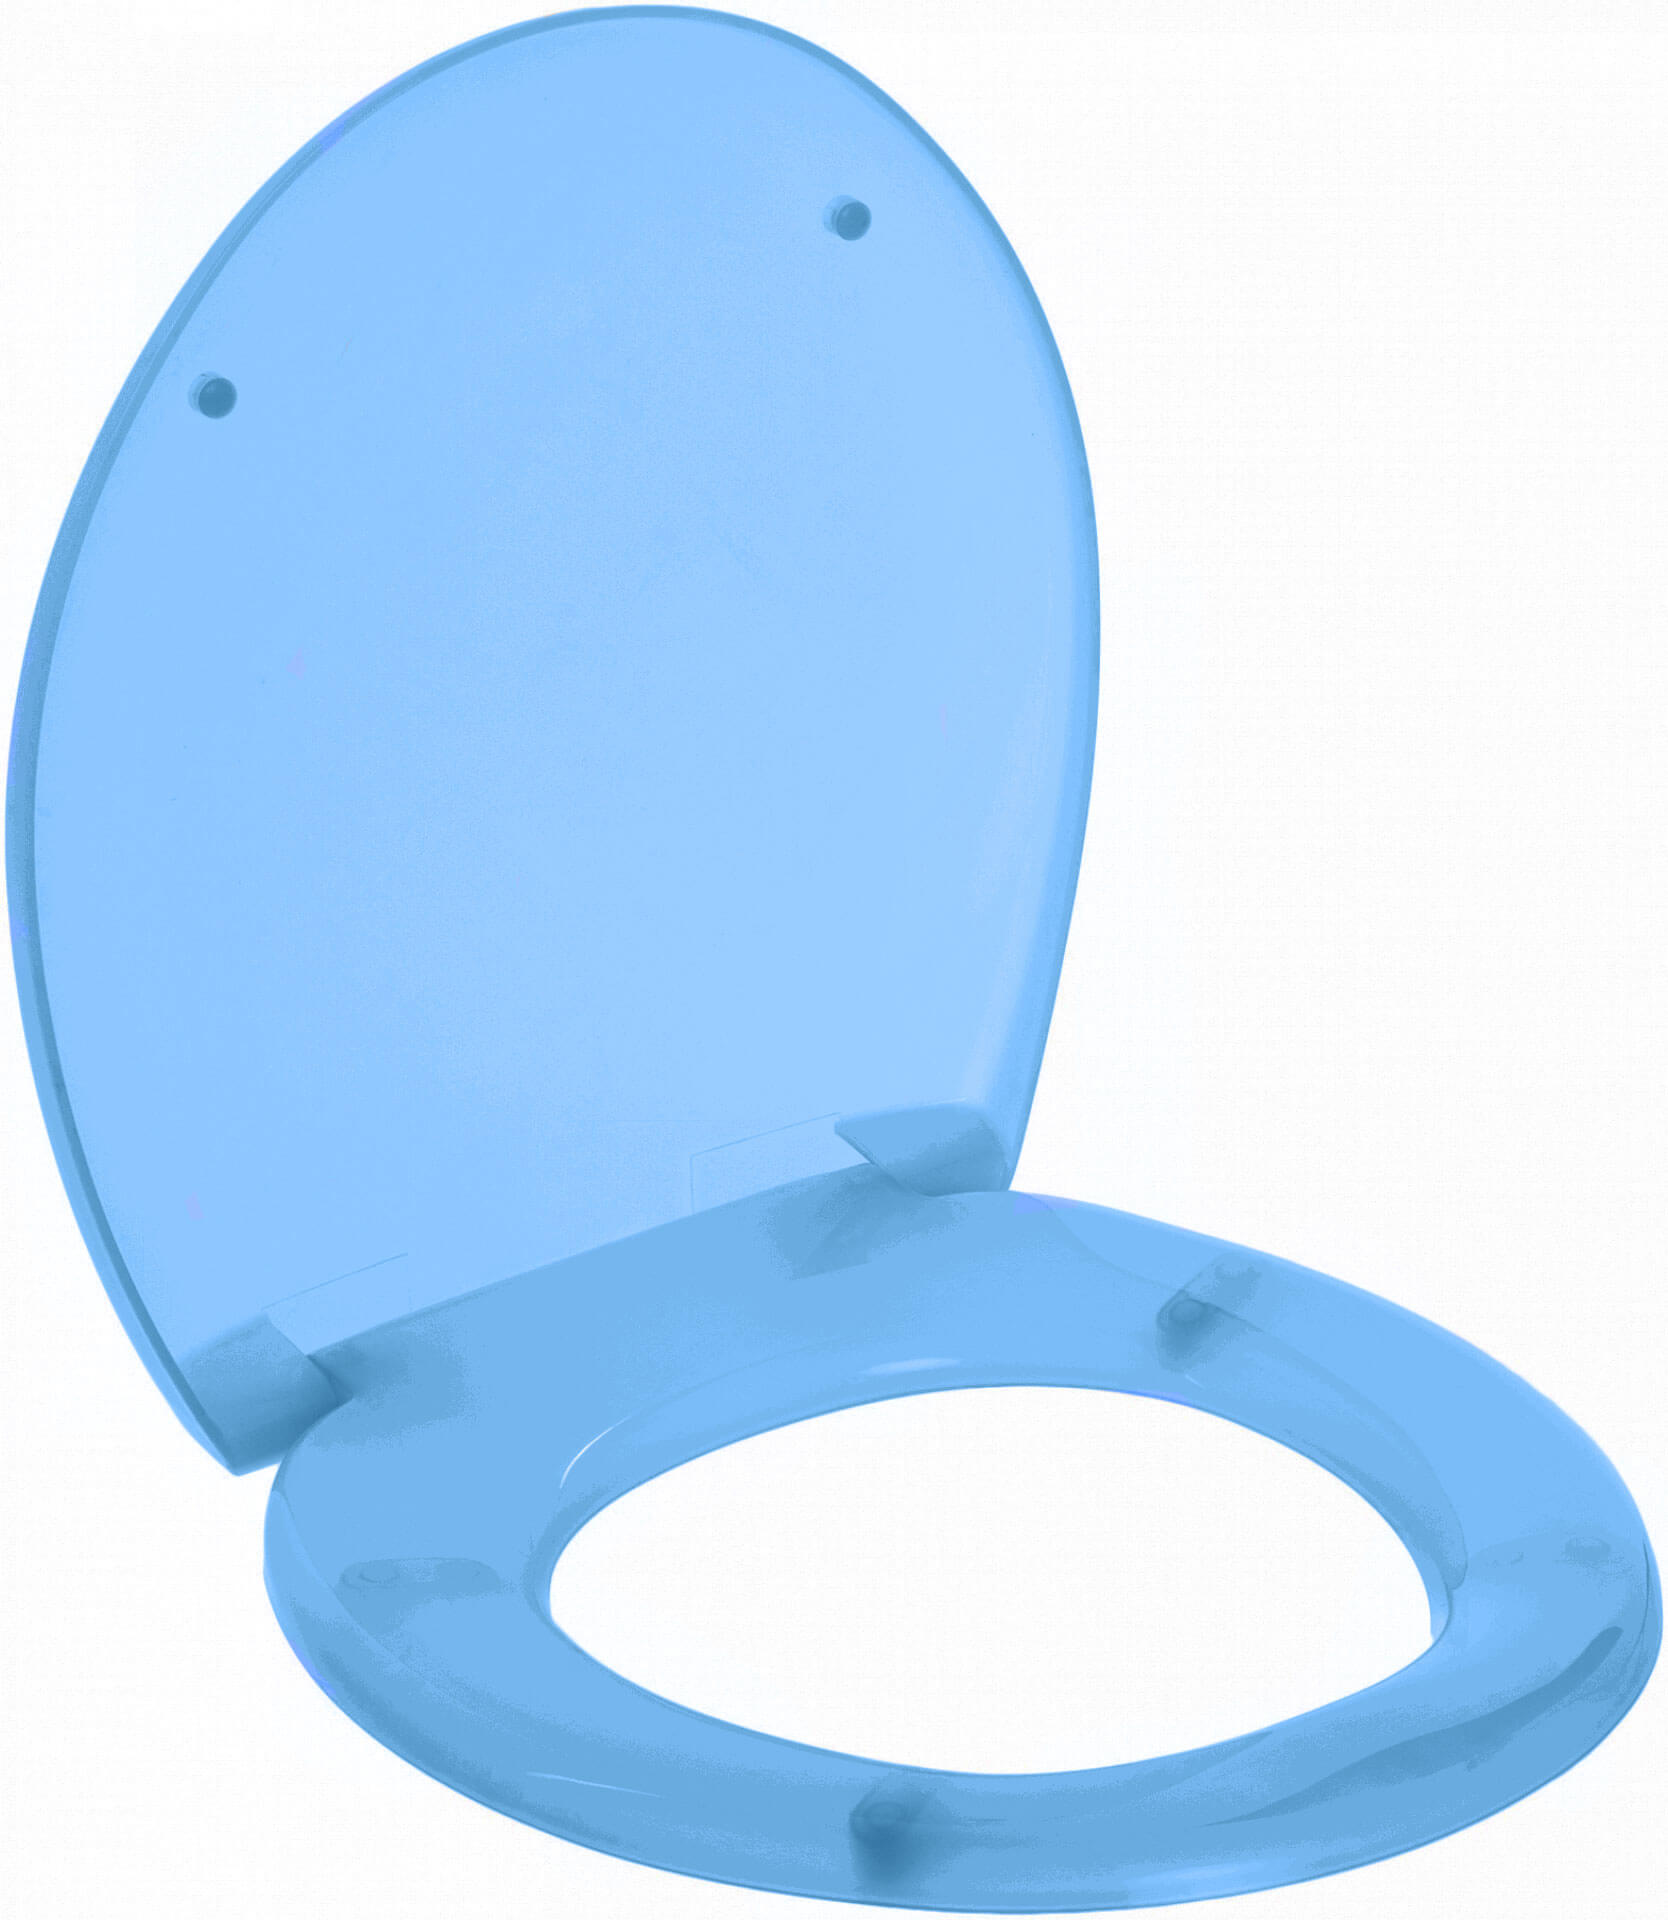 Сиденье для унитаза SoloPlast Универсал 425x368x35 мм синее